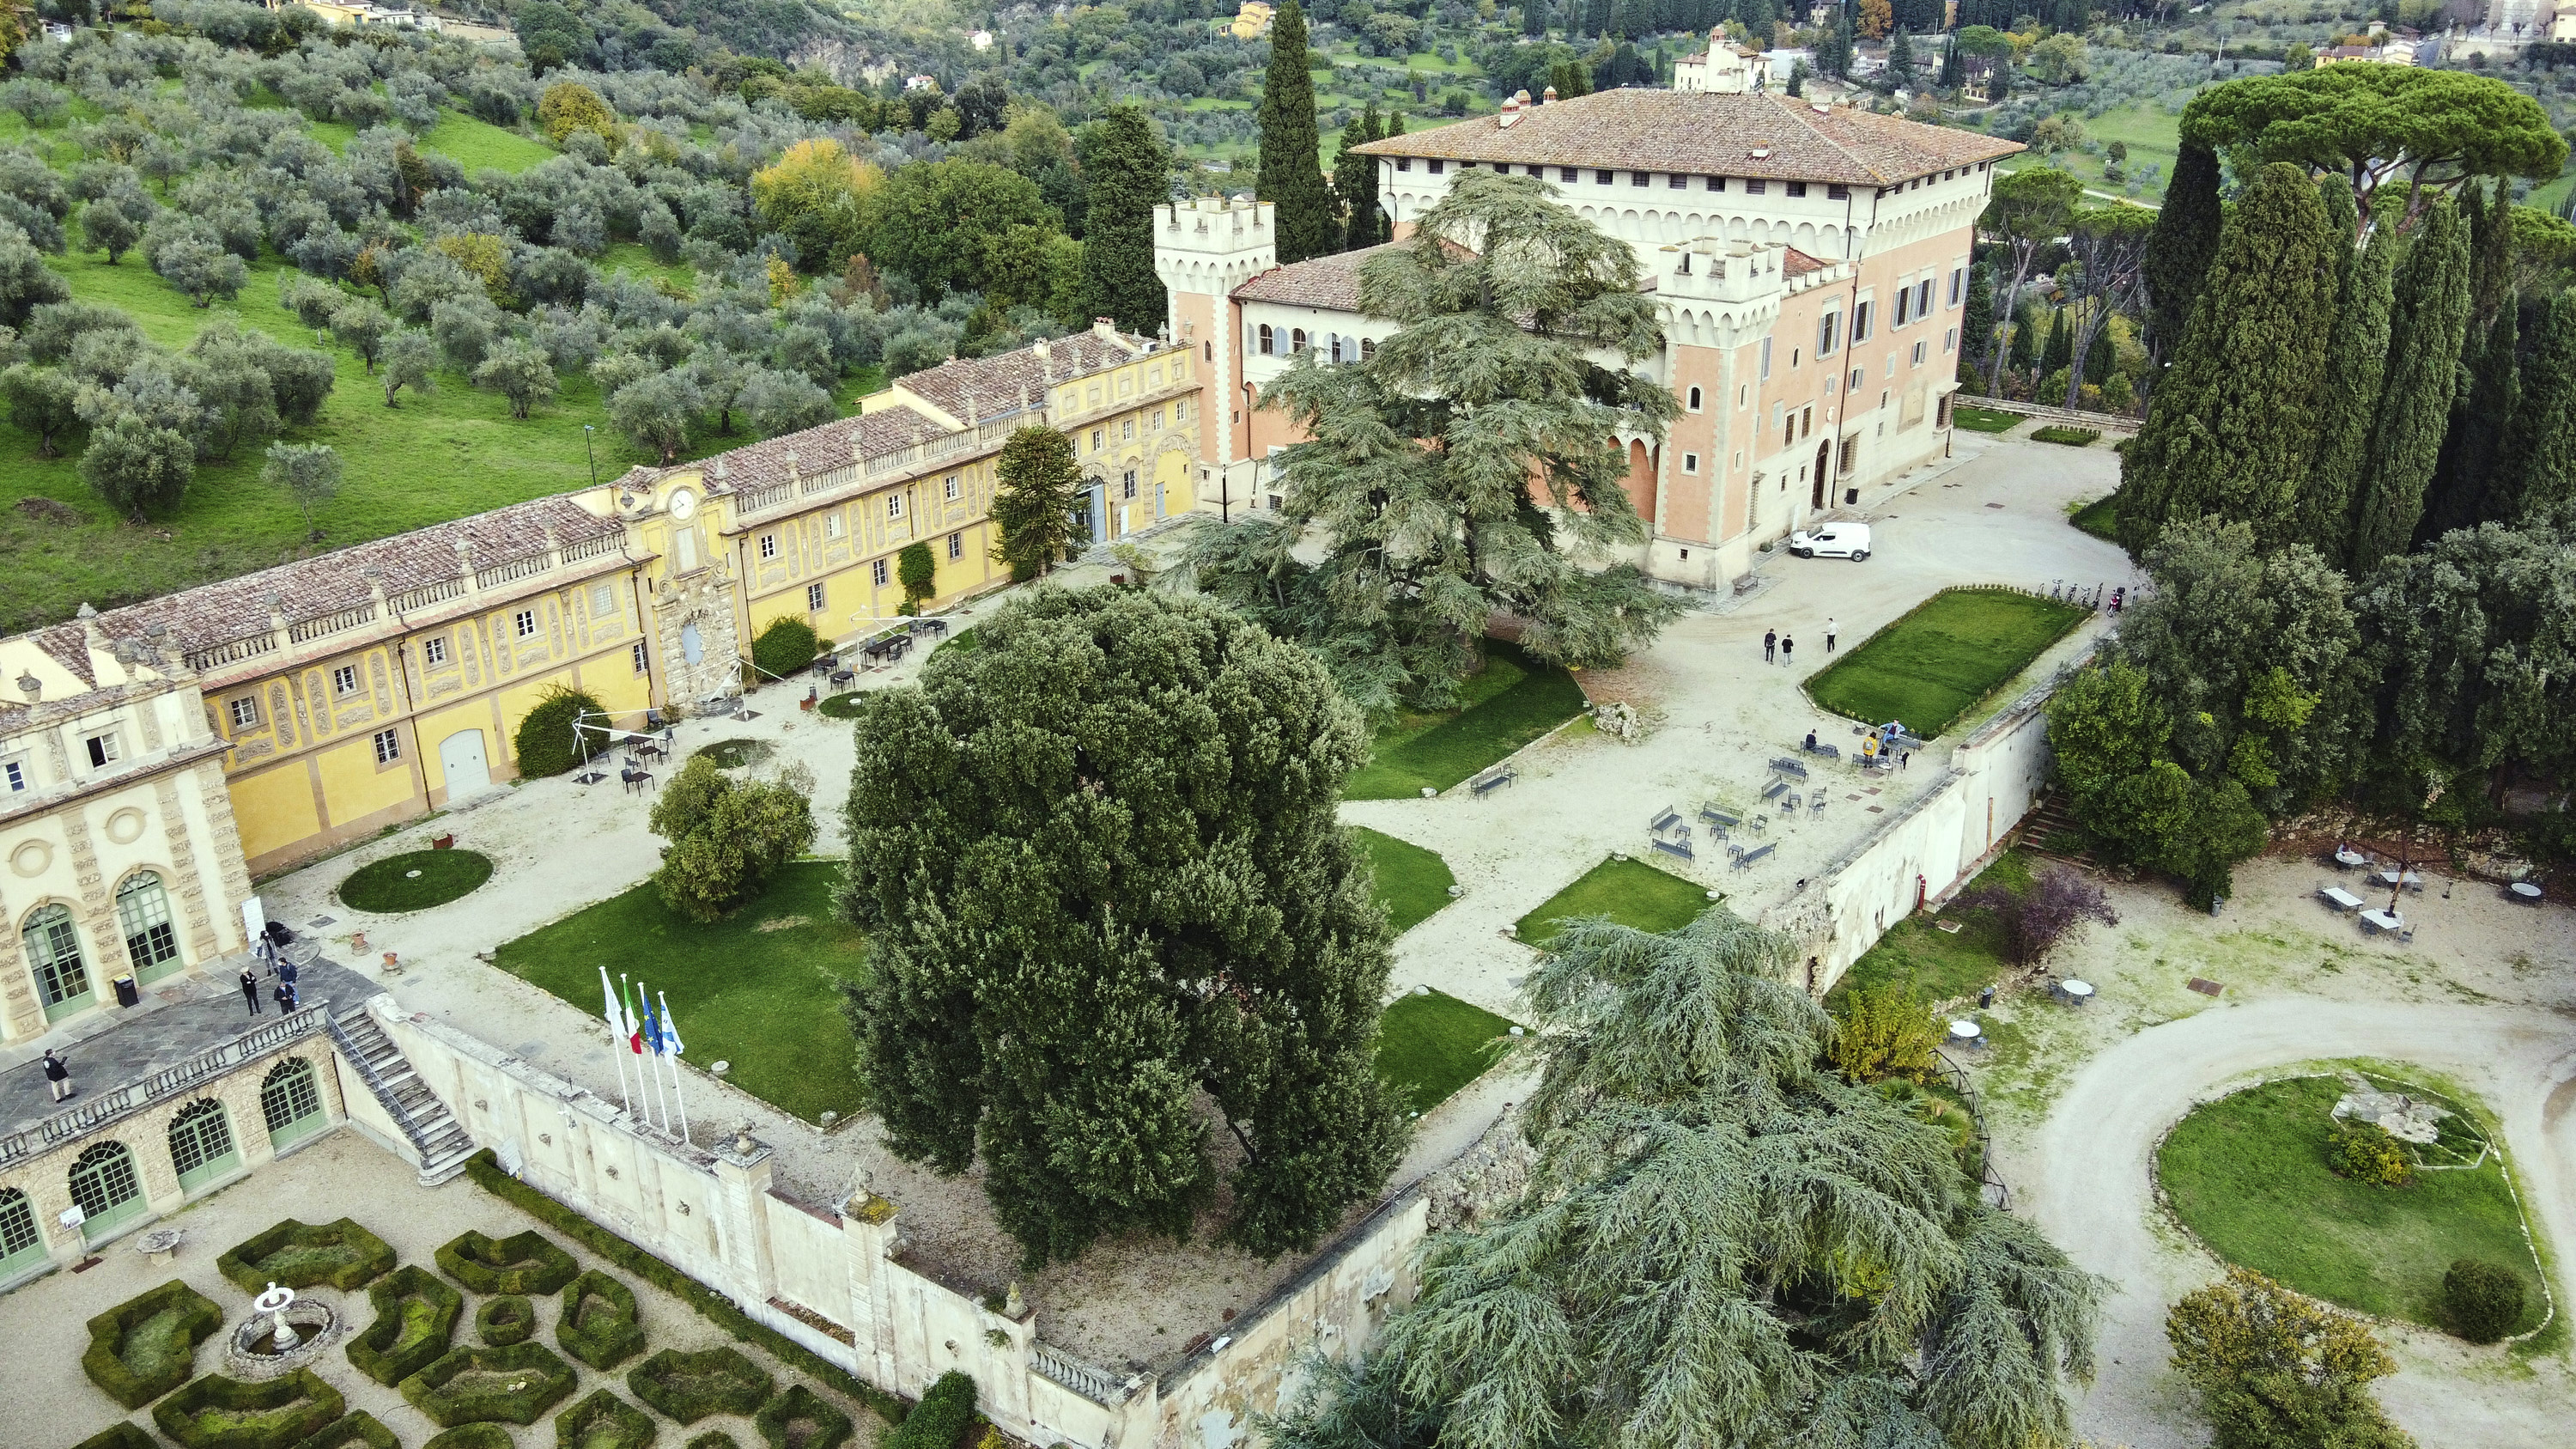 Villa Salviati building and garden full drone view